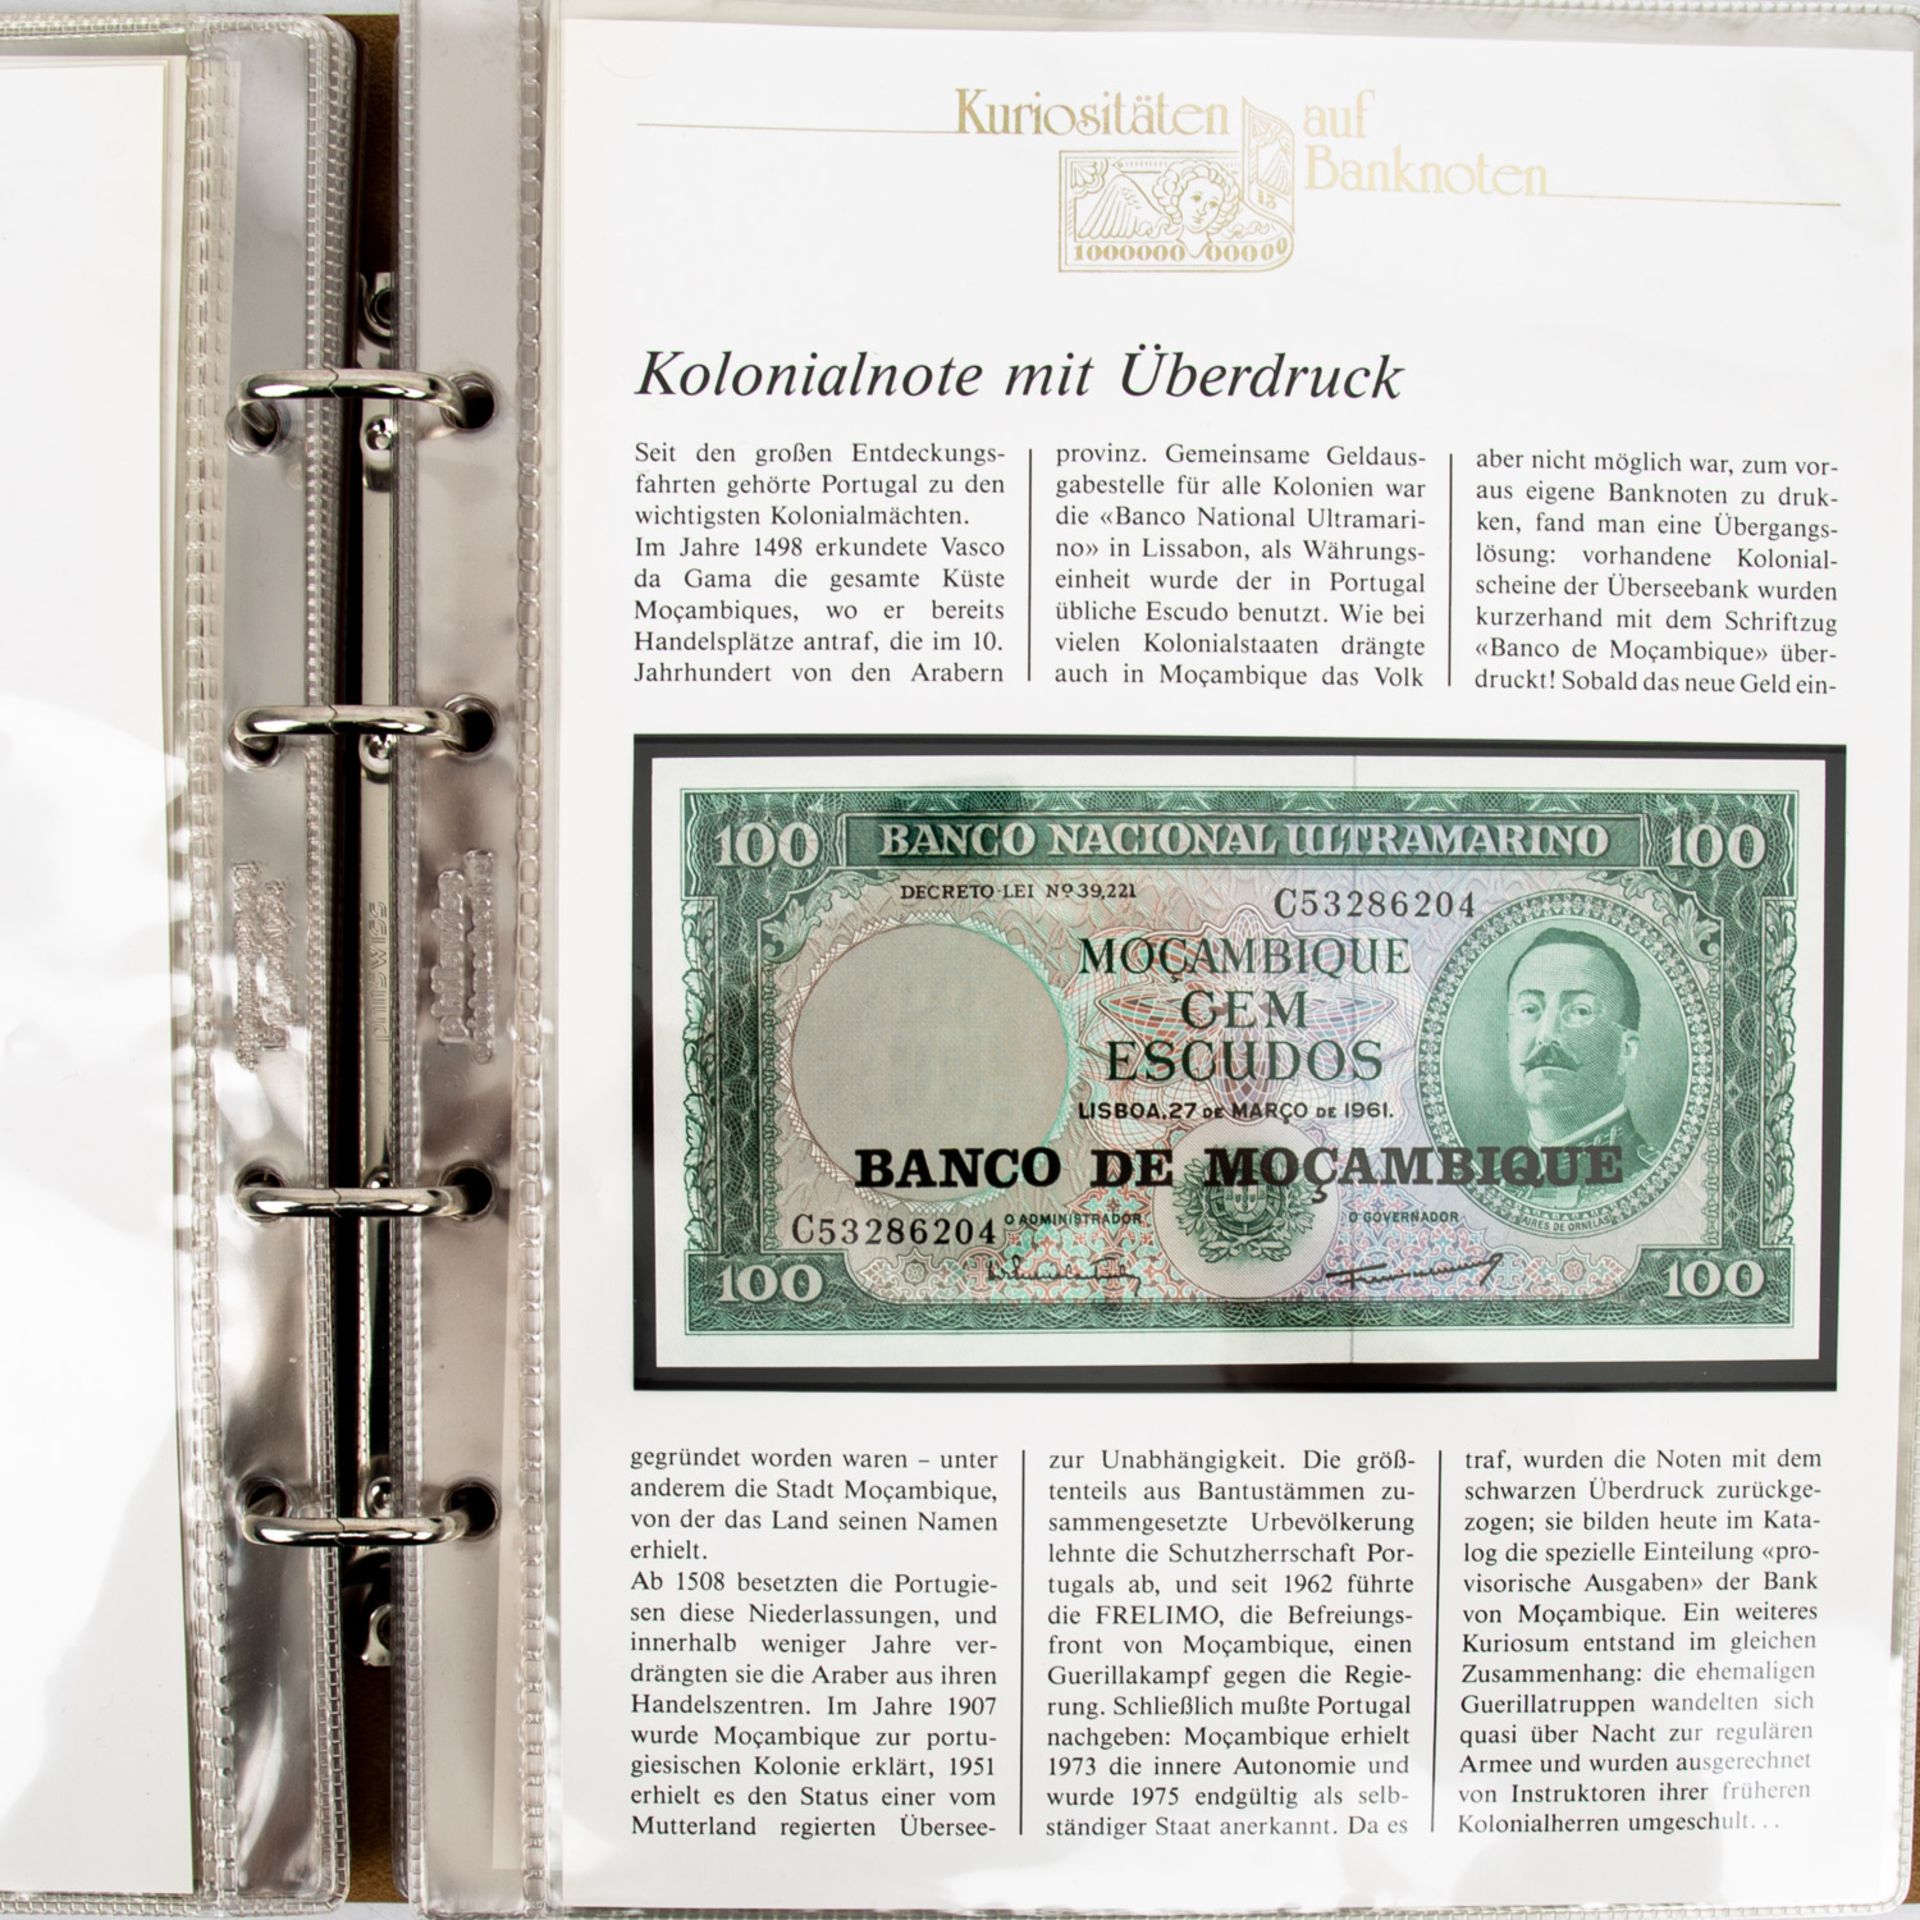 "Kuriositäten auf Banknoten" -2 Sammelalben mit Banknoten und Proben, u.a. aus Argent - Bild 3 aus 6